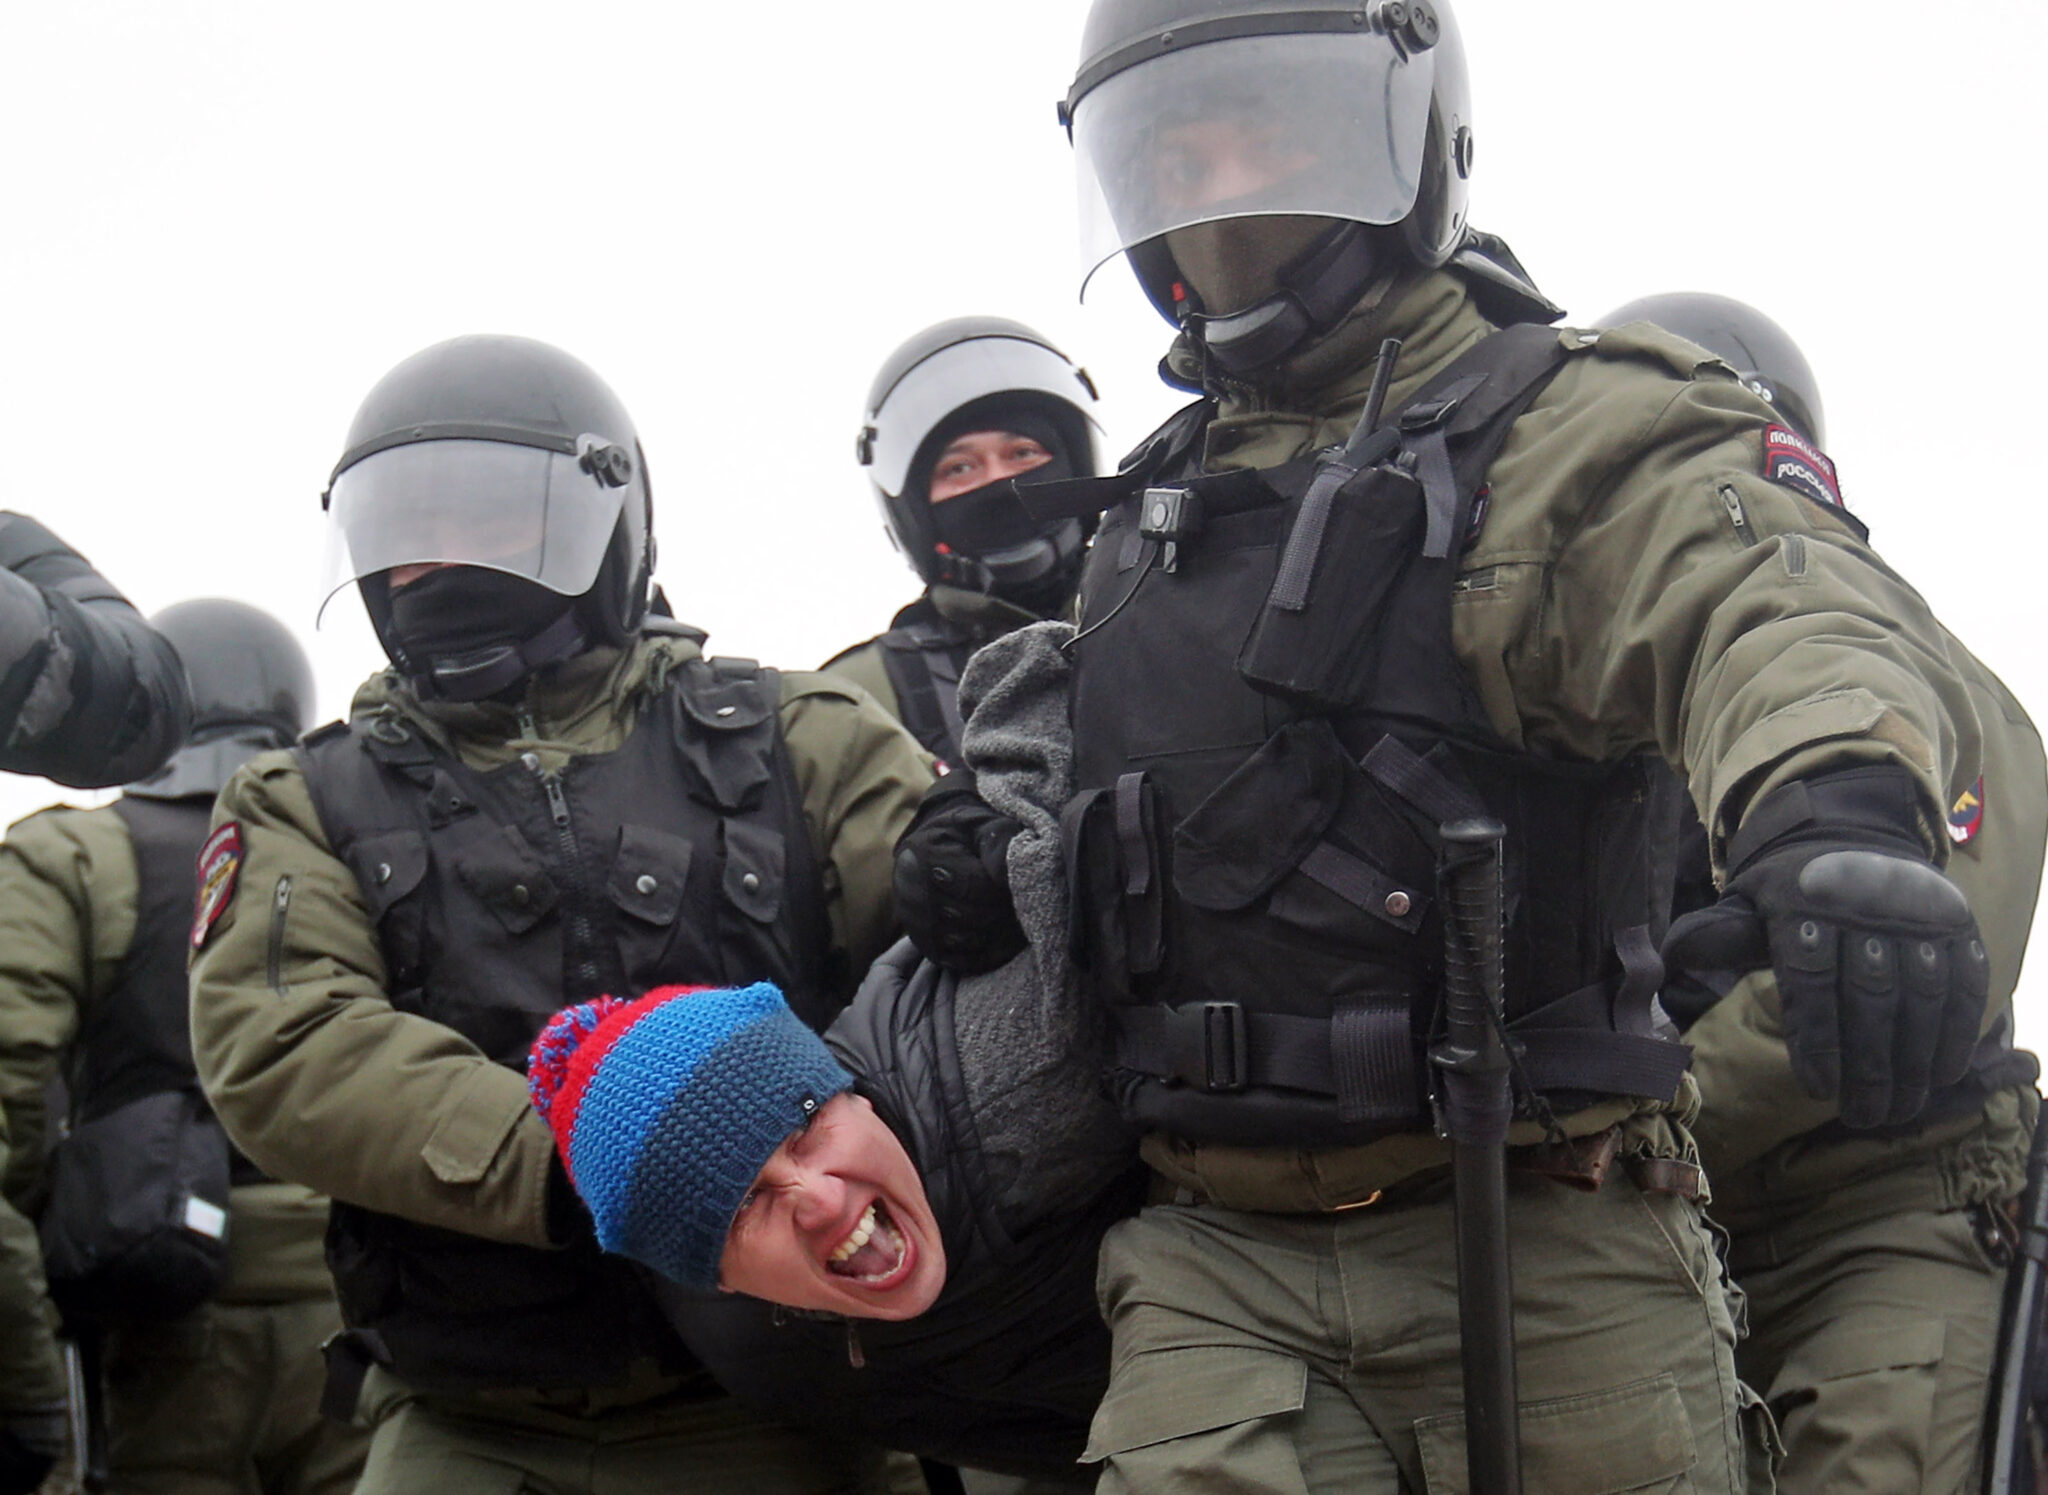 Задержания на акции в поддержку Навального. Фото Yegor Aleyev/TASS/Scanpix/Leta